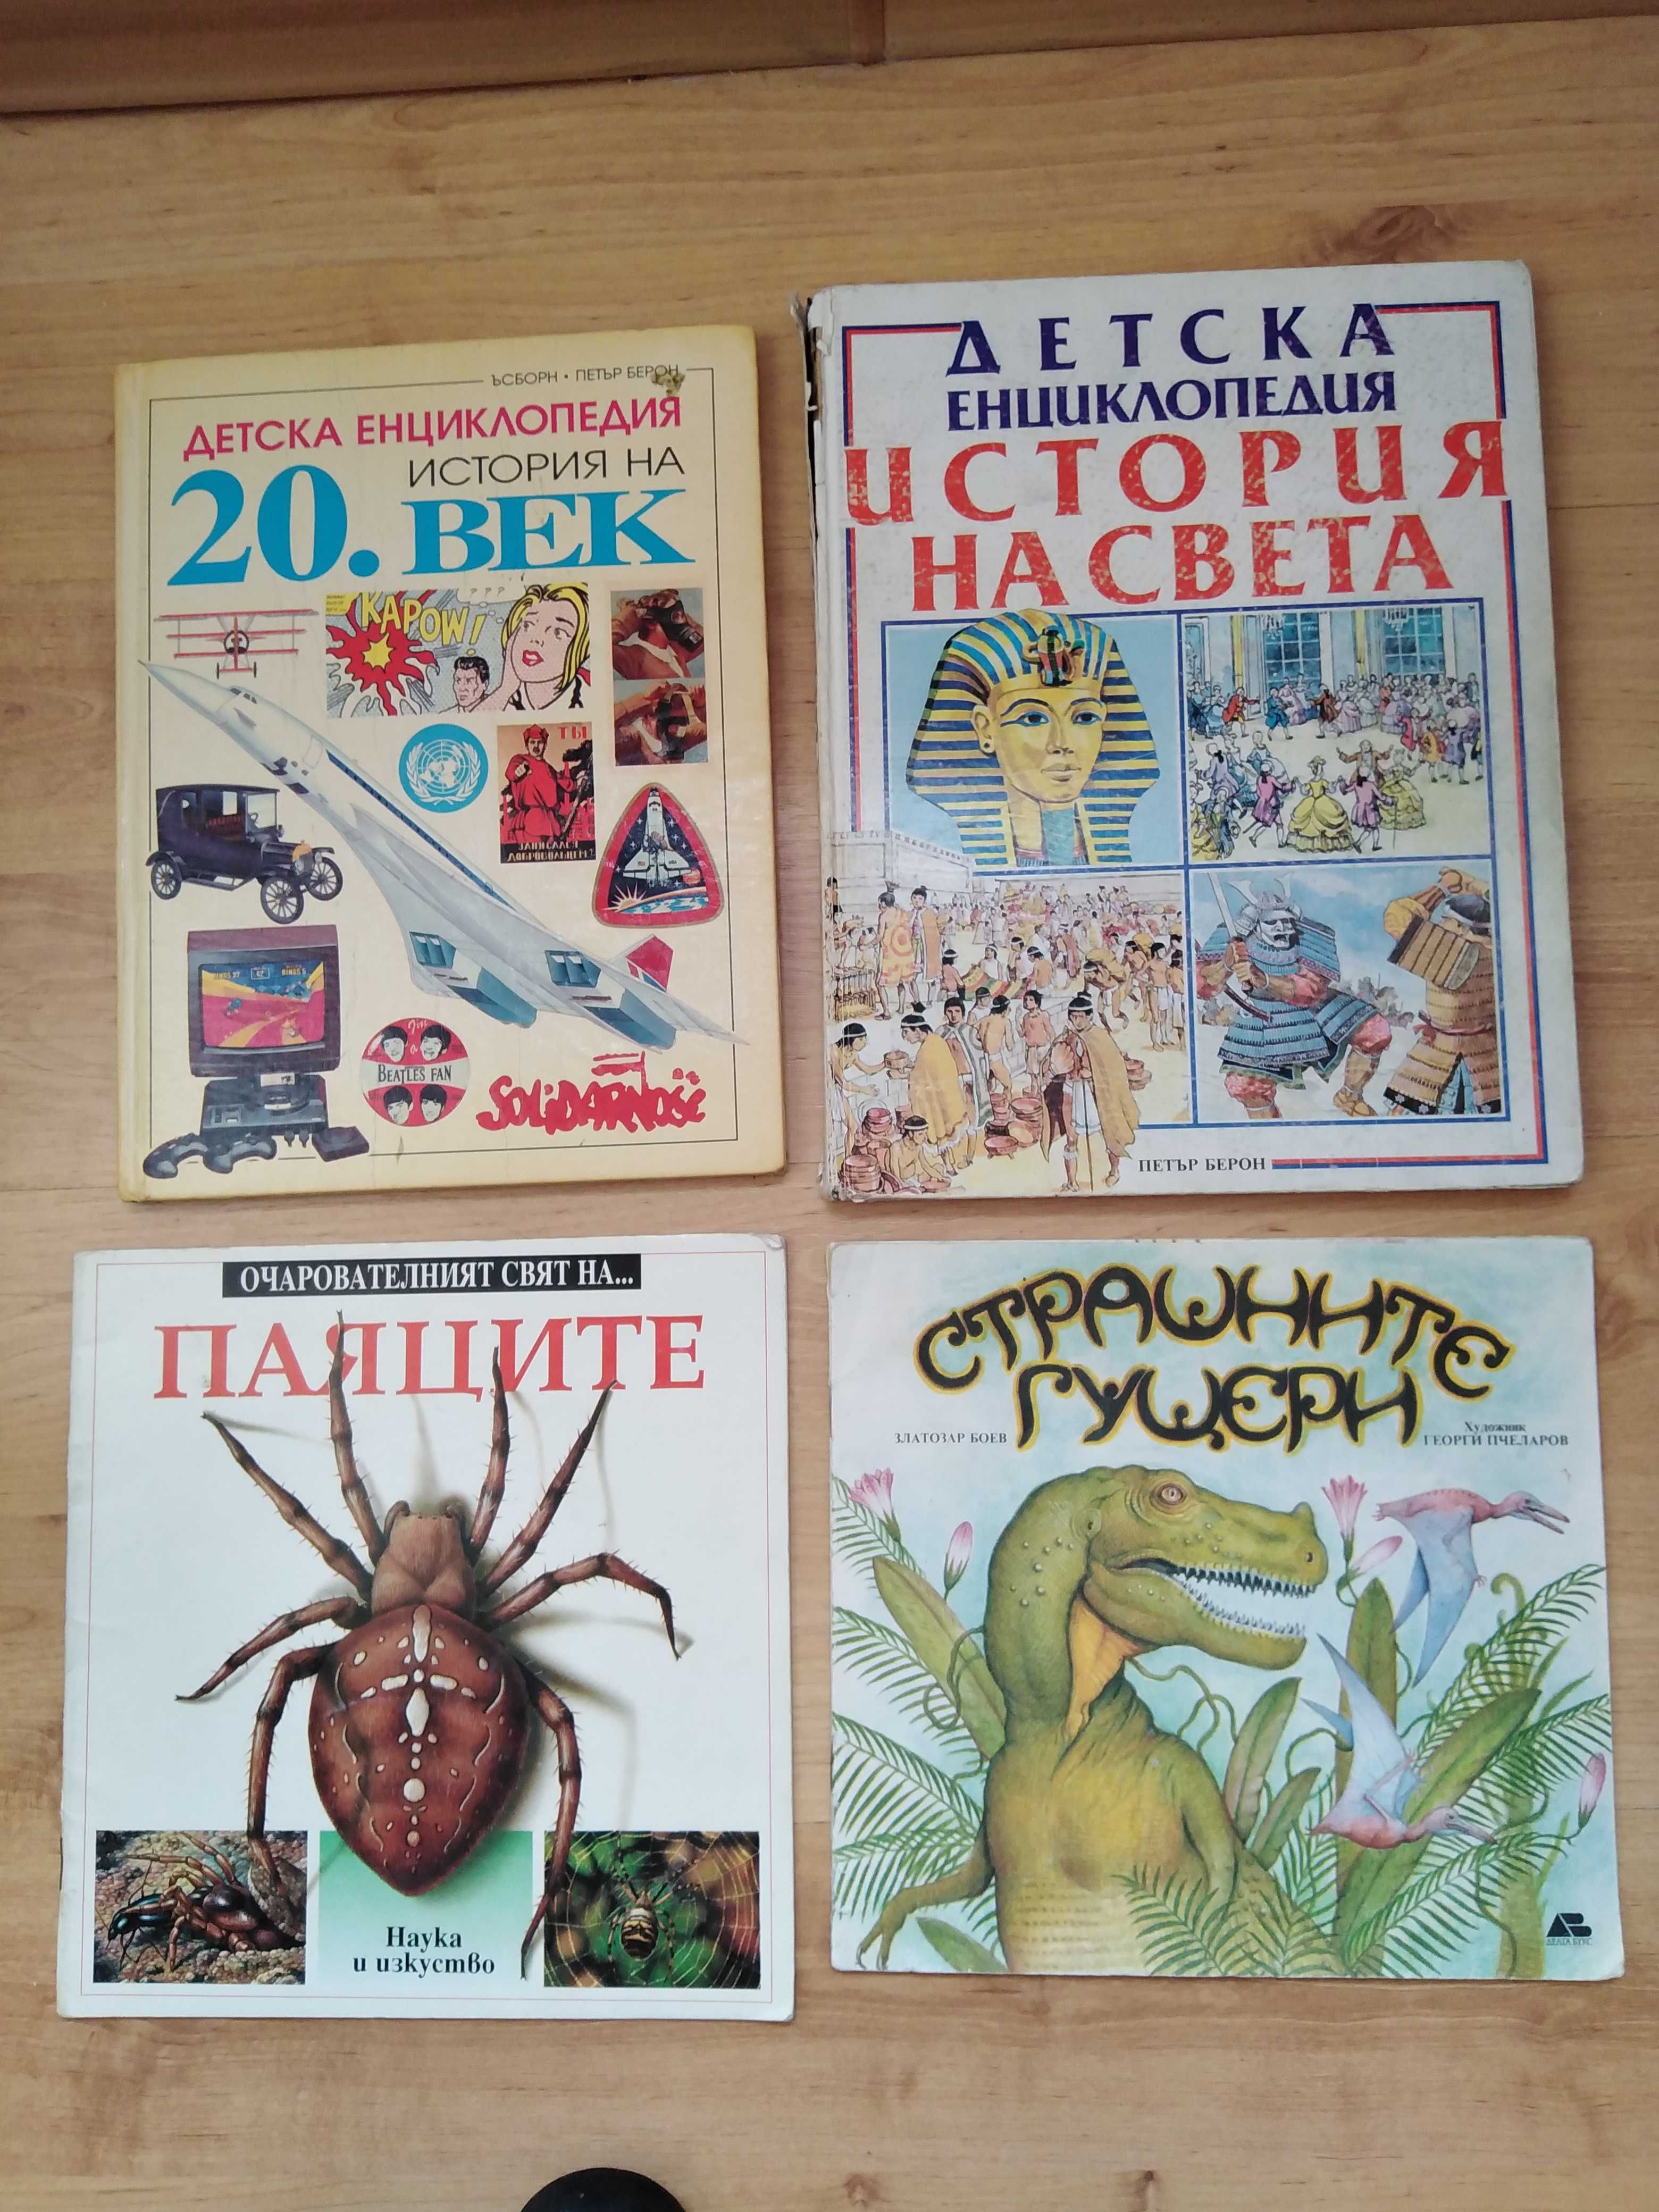 занимателни и образователни книги, книжки, списания и комикси за деца